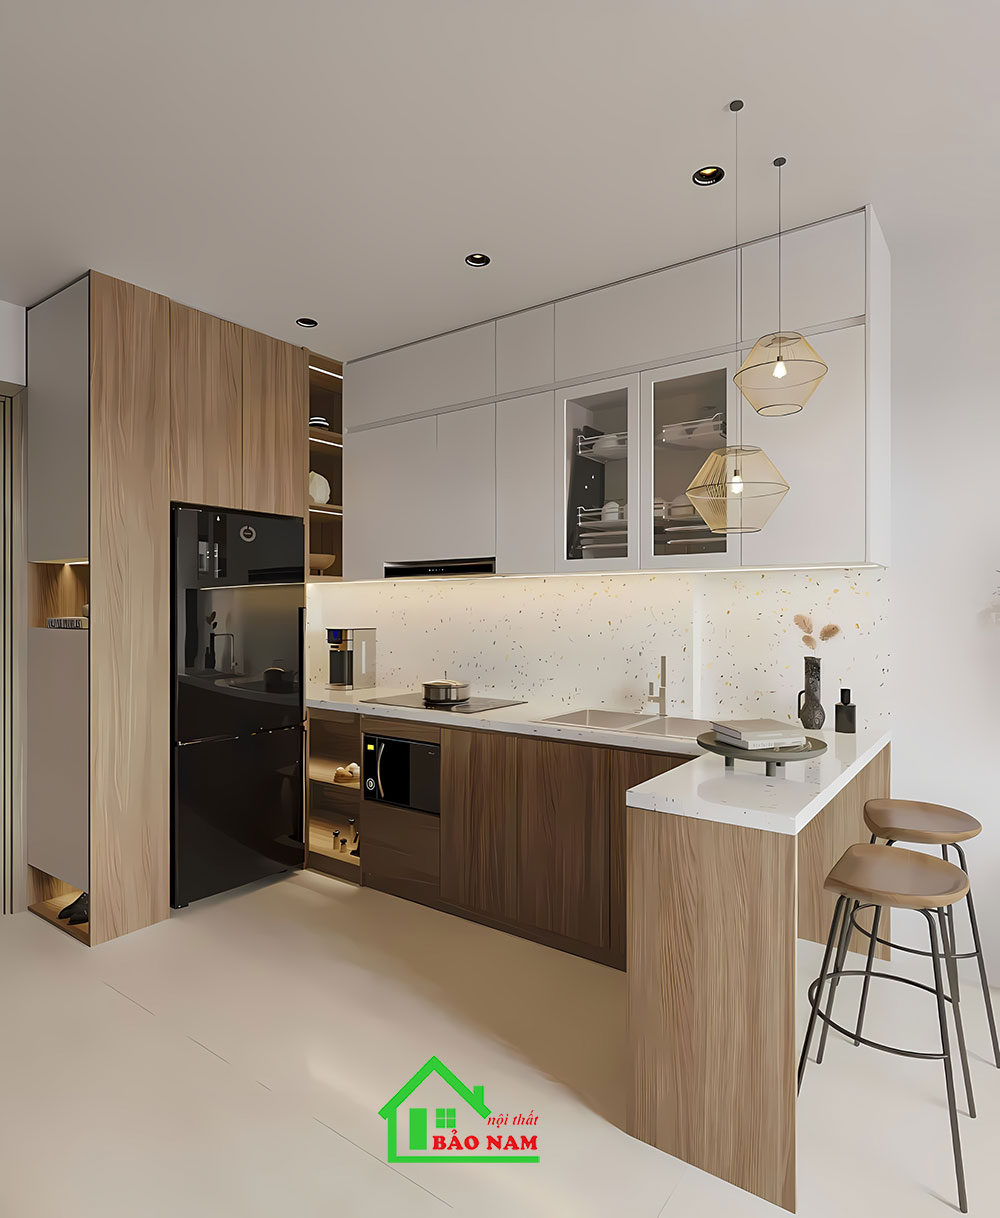 Mẫu tủ bếp đơn giản hiện đại cho căn hộ chung cư Vinhome